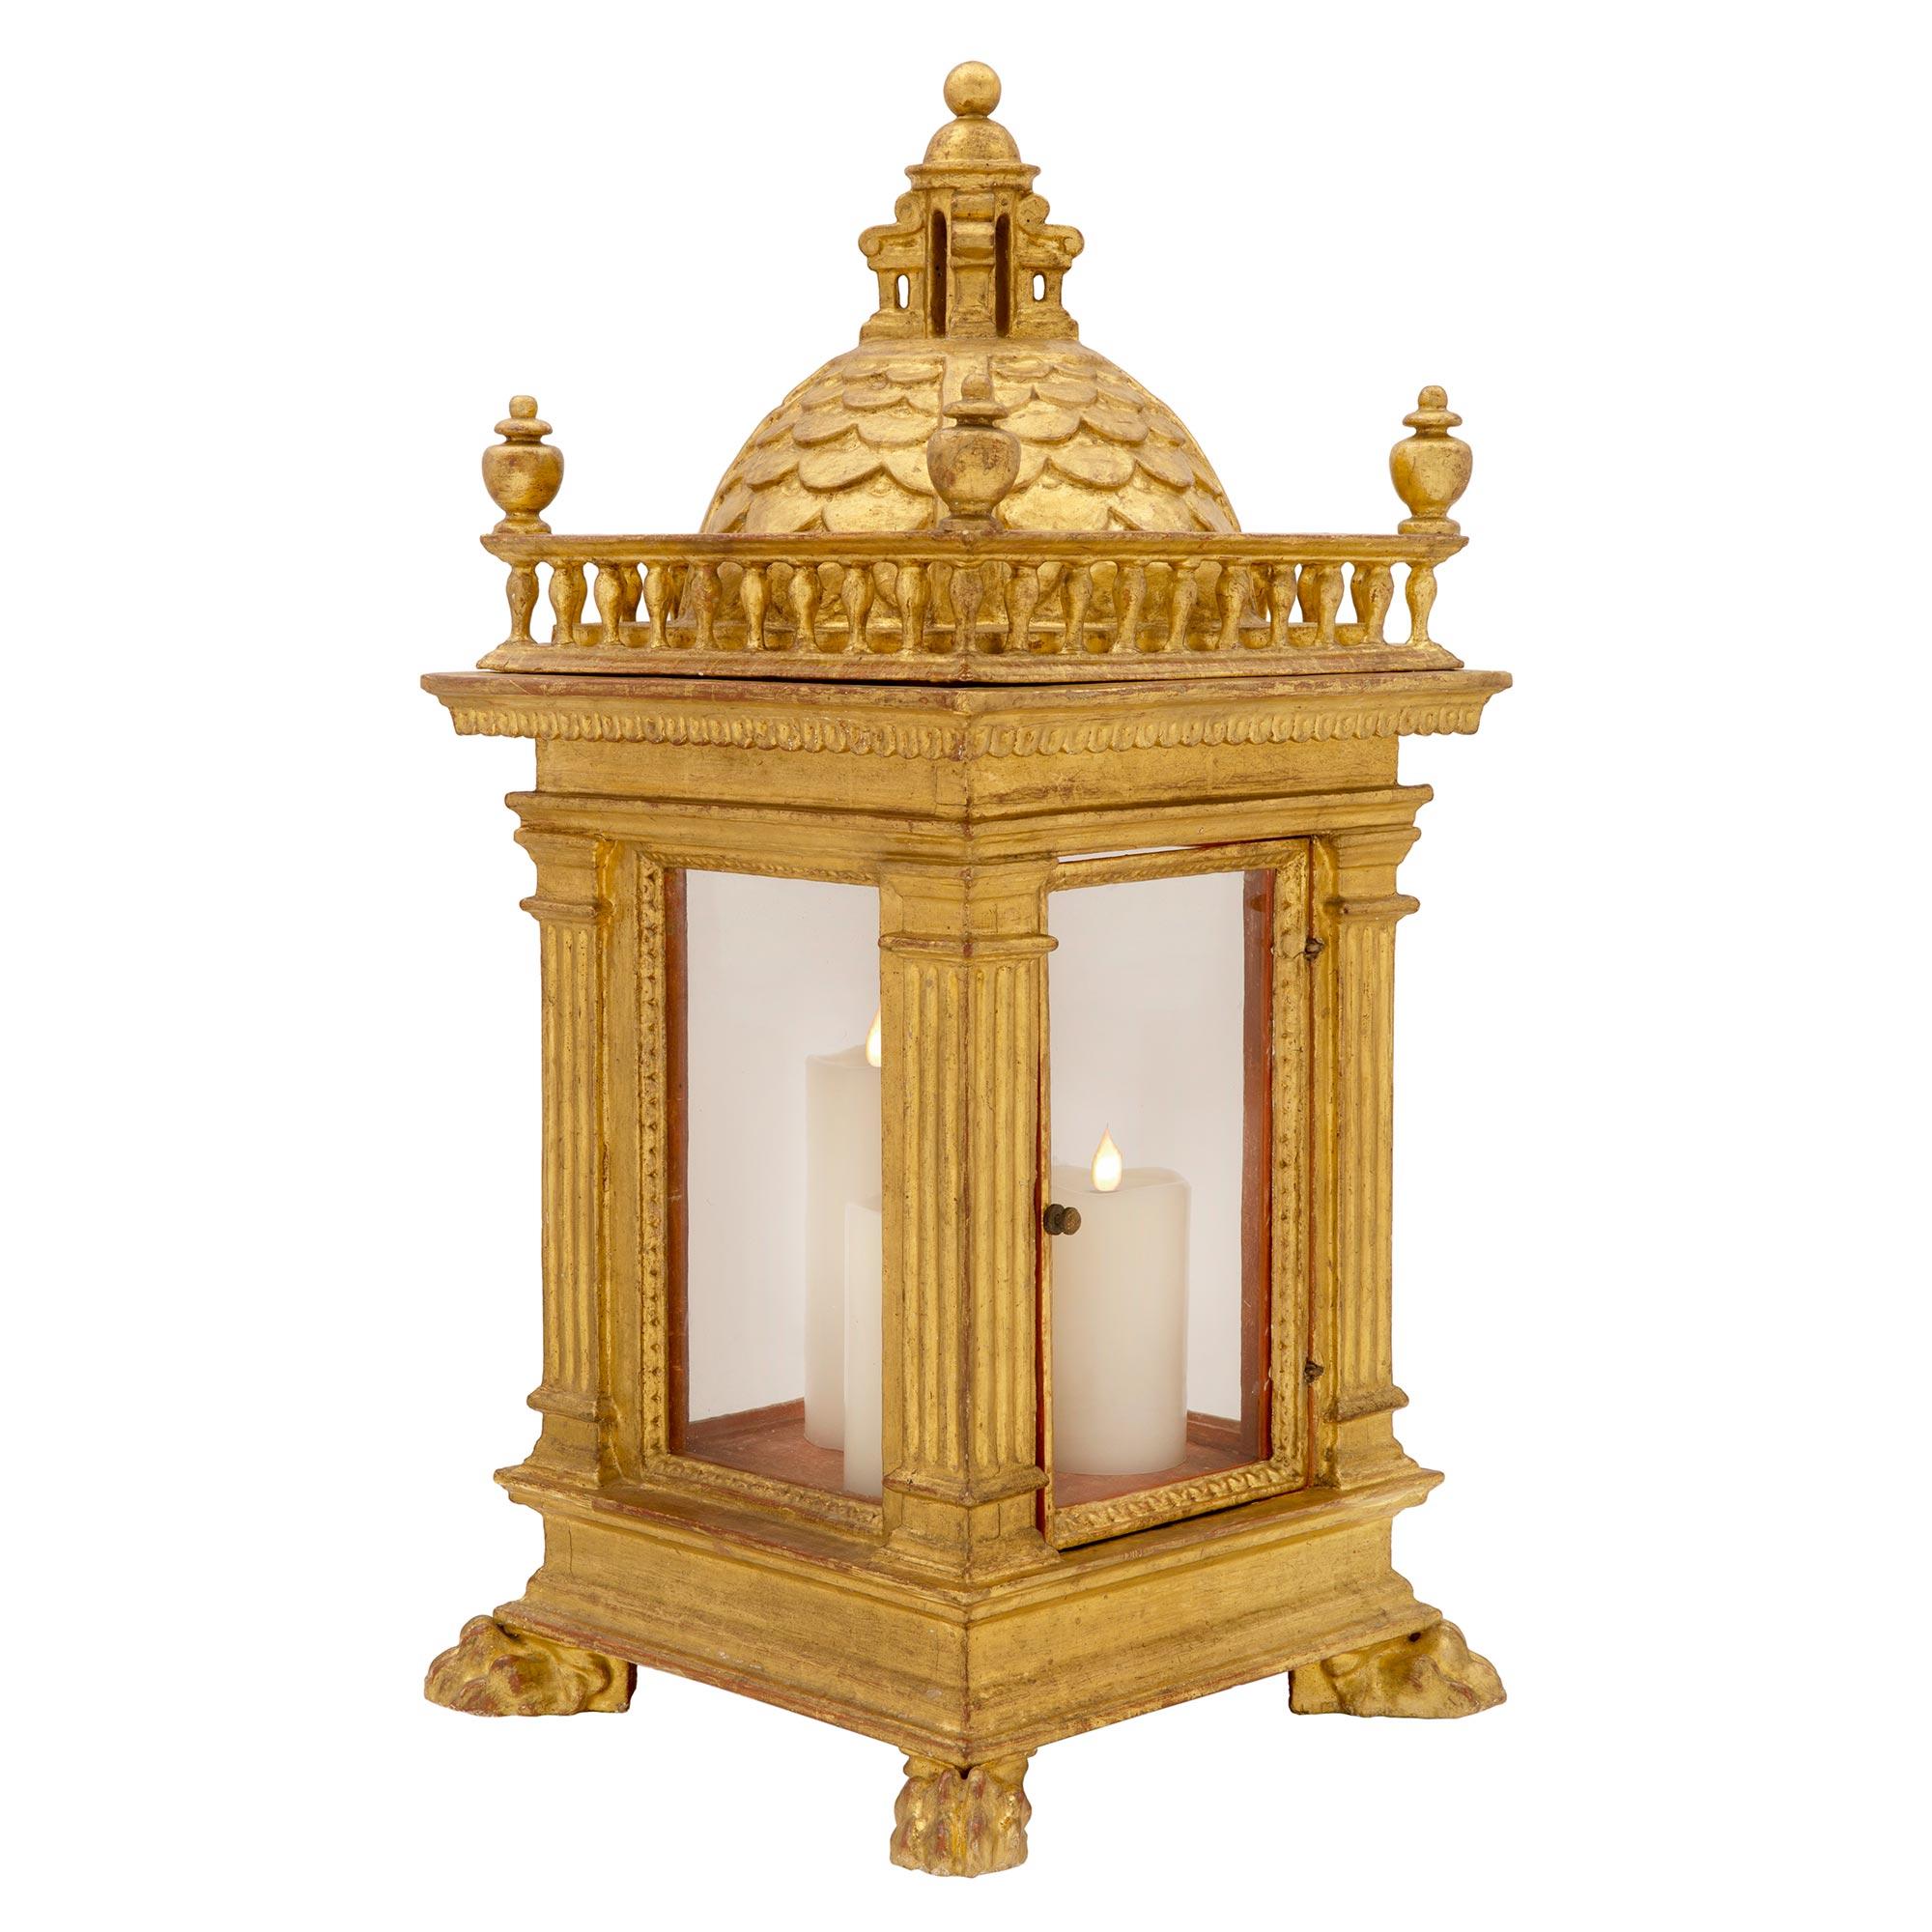 Paire exceptionnelle et de grande taille de lanternes-tempête en bois doré toscan du XVIIIe siècle, vers 1750. Chaque lanterne est surélevée par de beaux pieds à pattes richement sculptés sous la base carrée au motif décoratif marbré. D'étonnantes